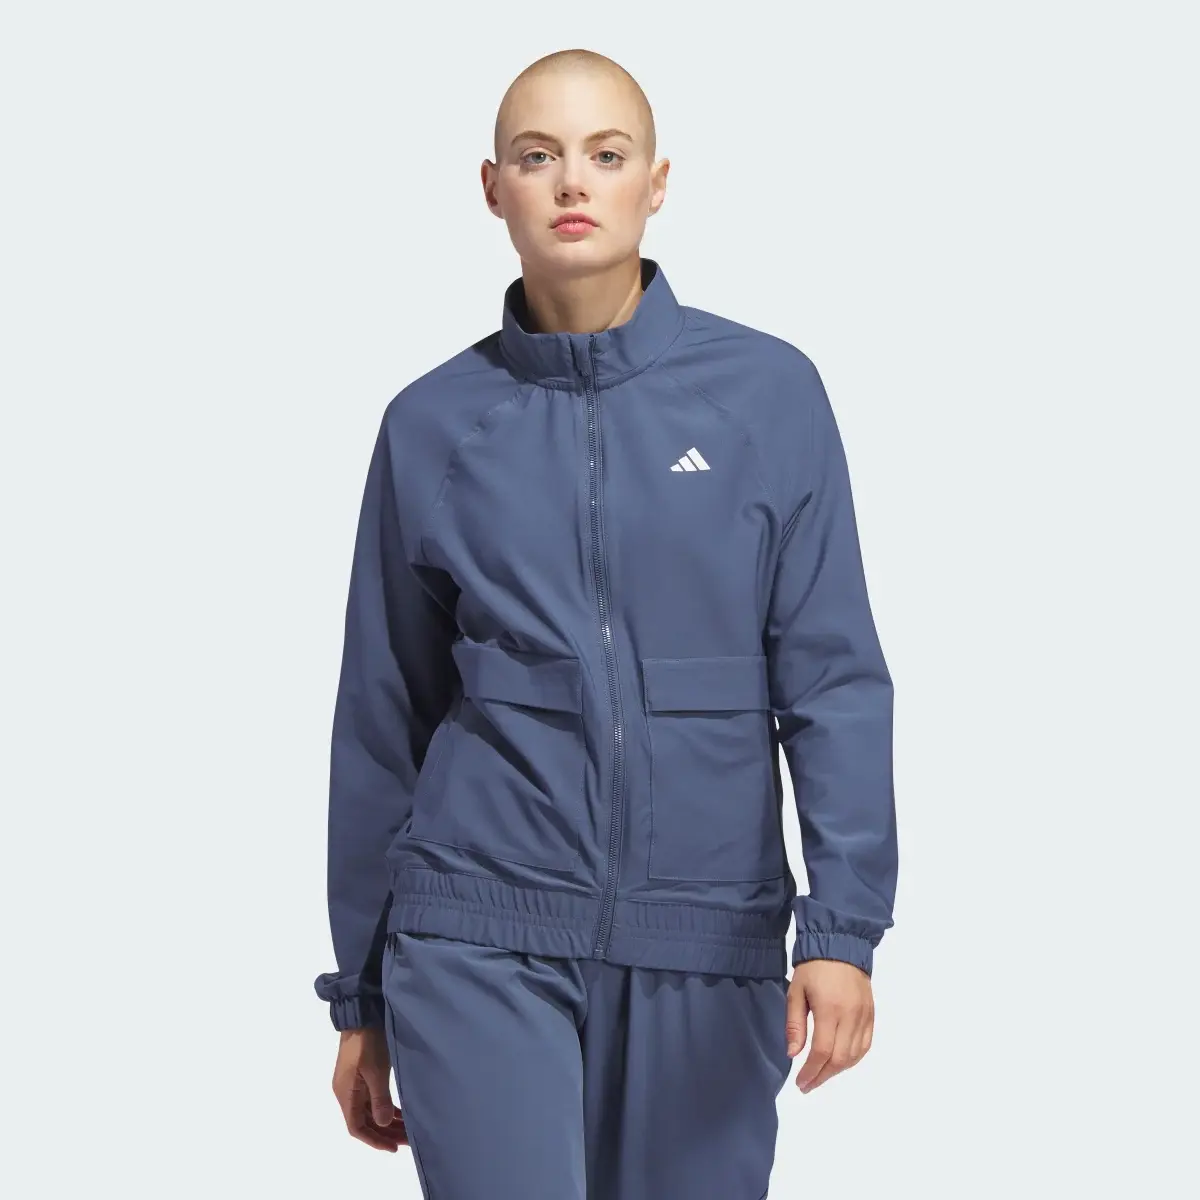 Adidas Women's Ultimate365 Novelty Jacket. 2